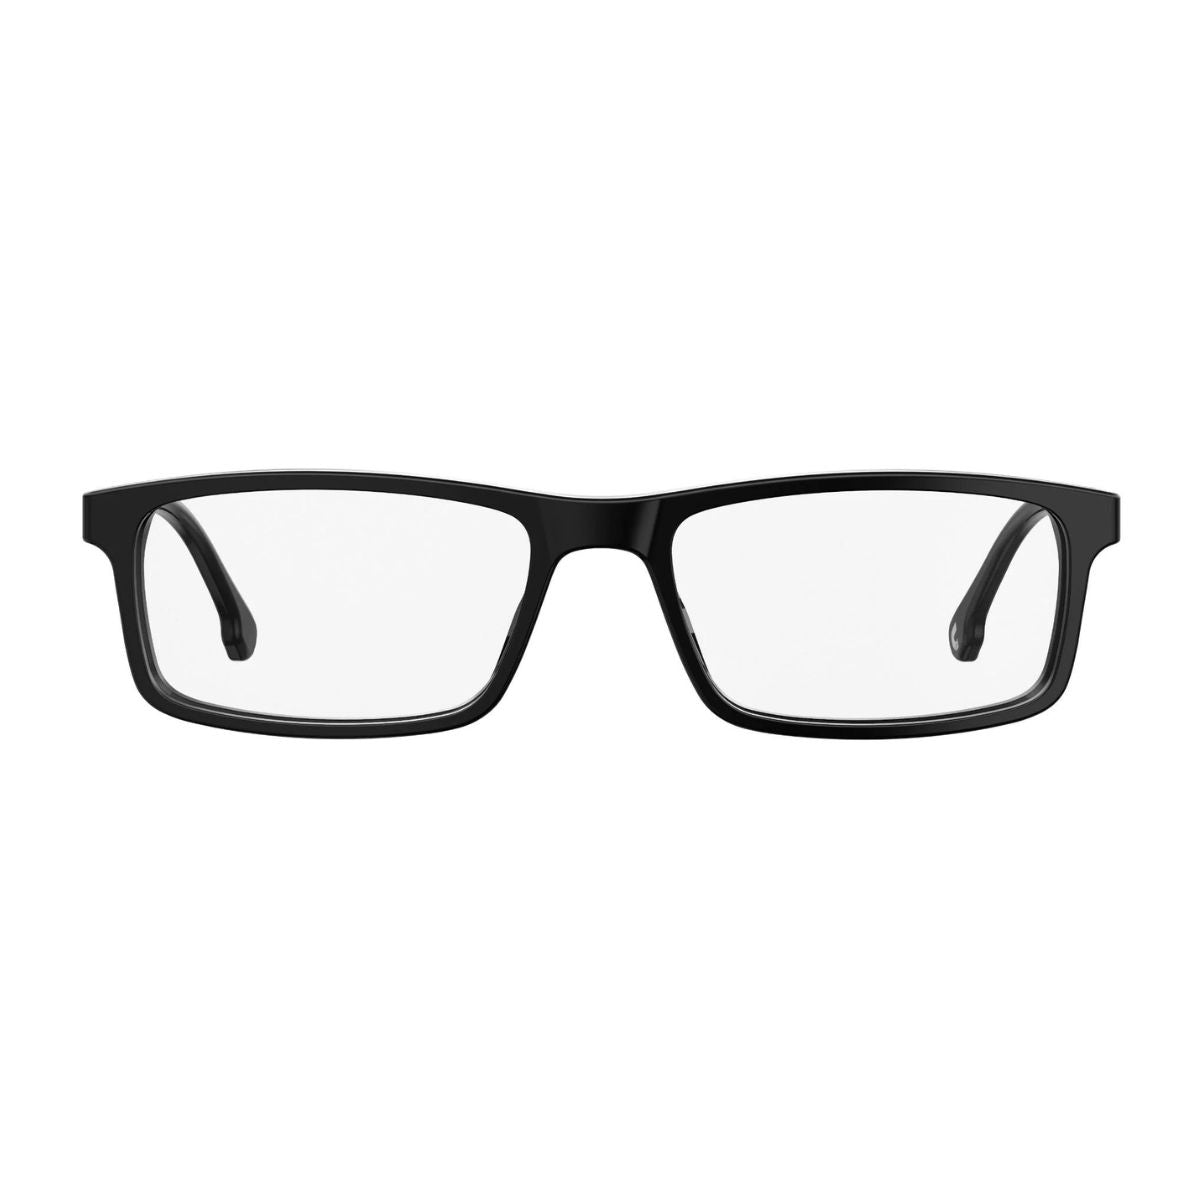 "Carrera 8837 807 optical eyewear frame for men's online at optorium"